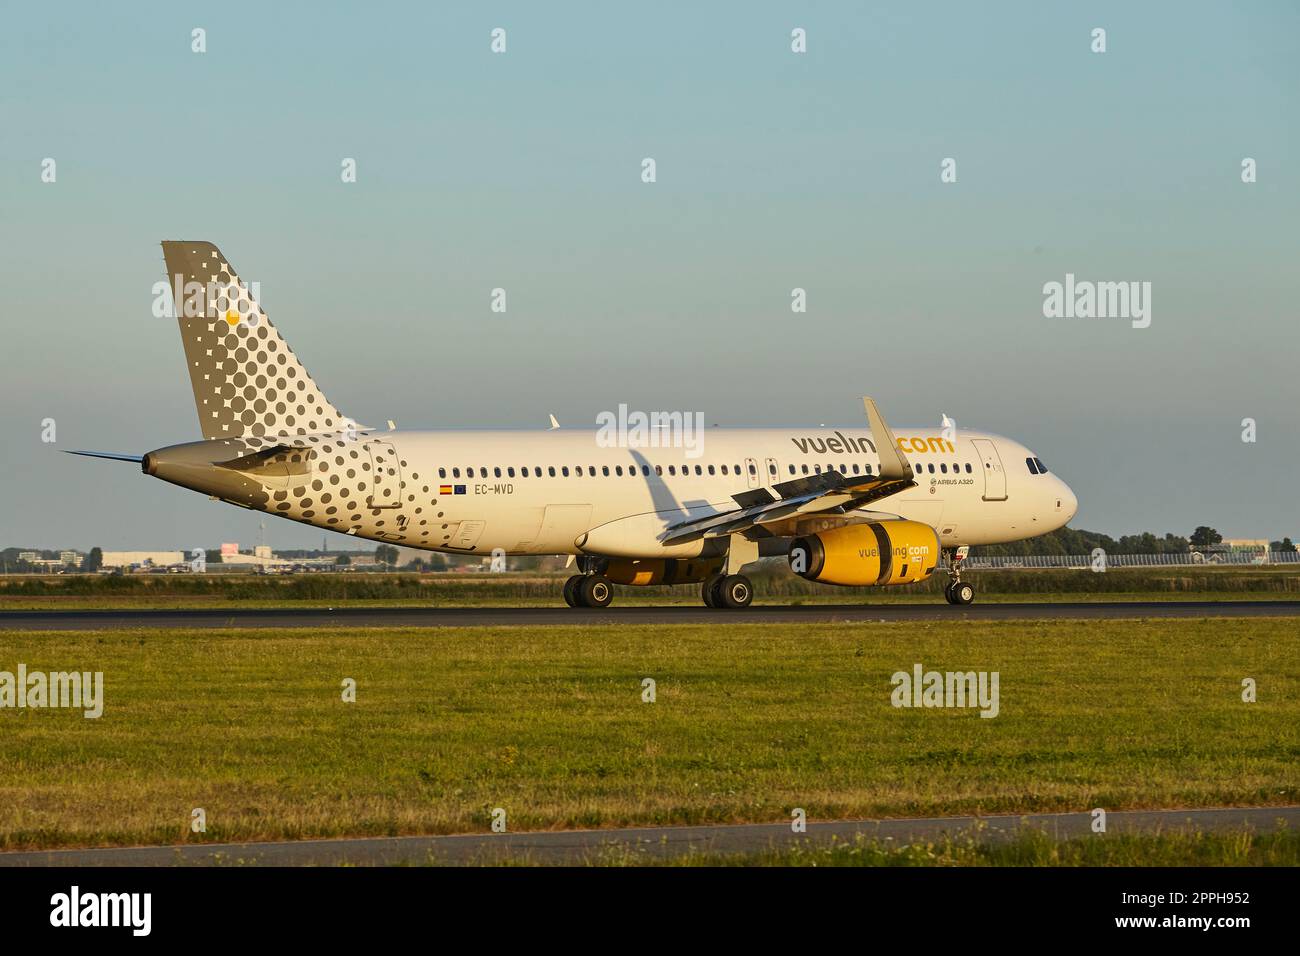 Amsterdam aéroport Schiphol - Airbus A320-232 de Vueling atterrit Banque D'Images